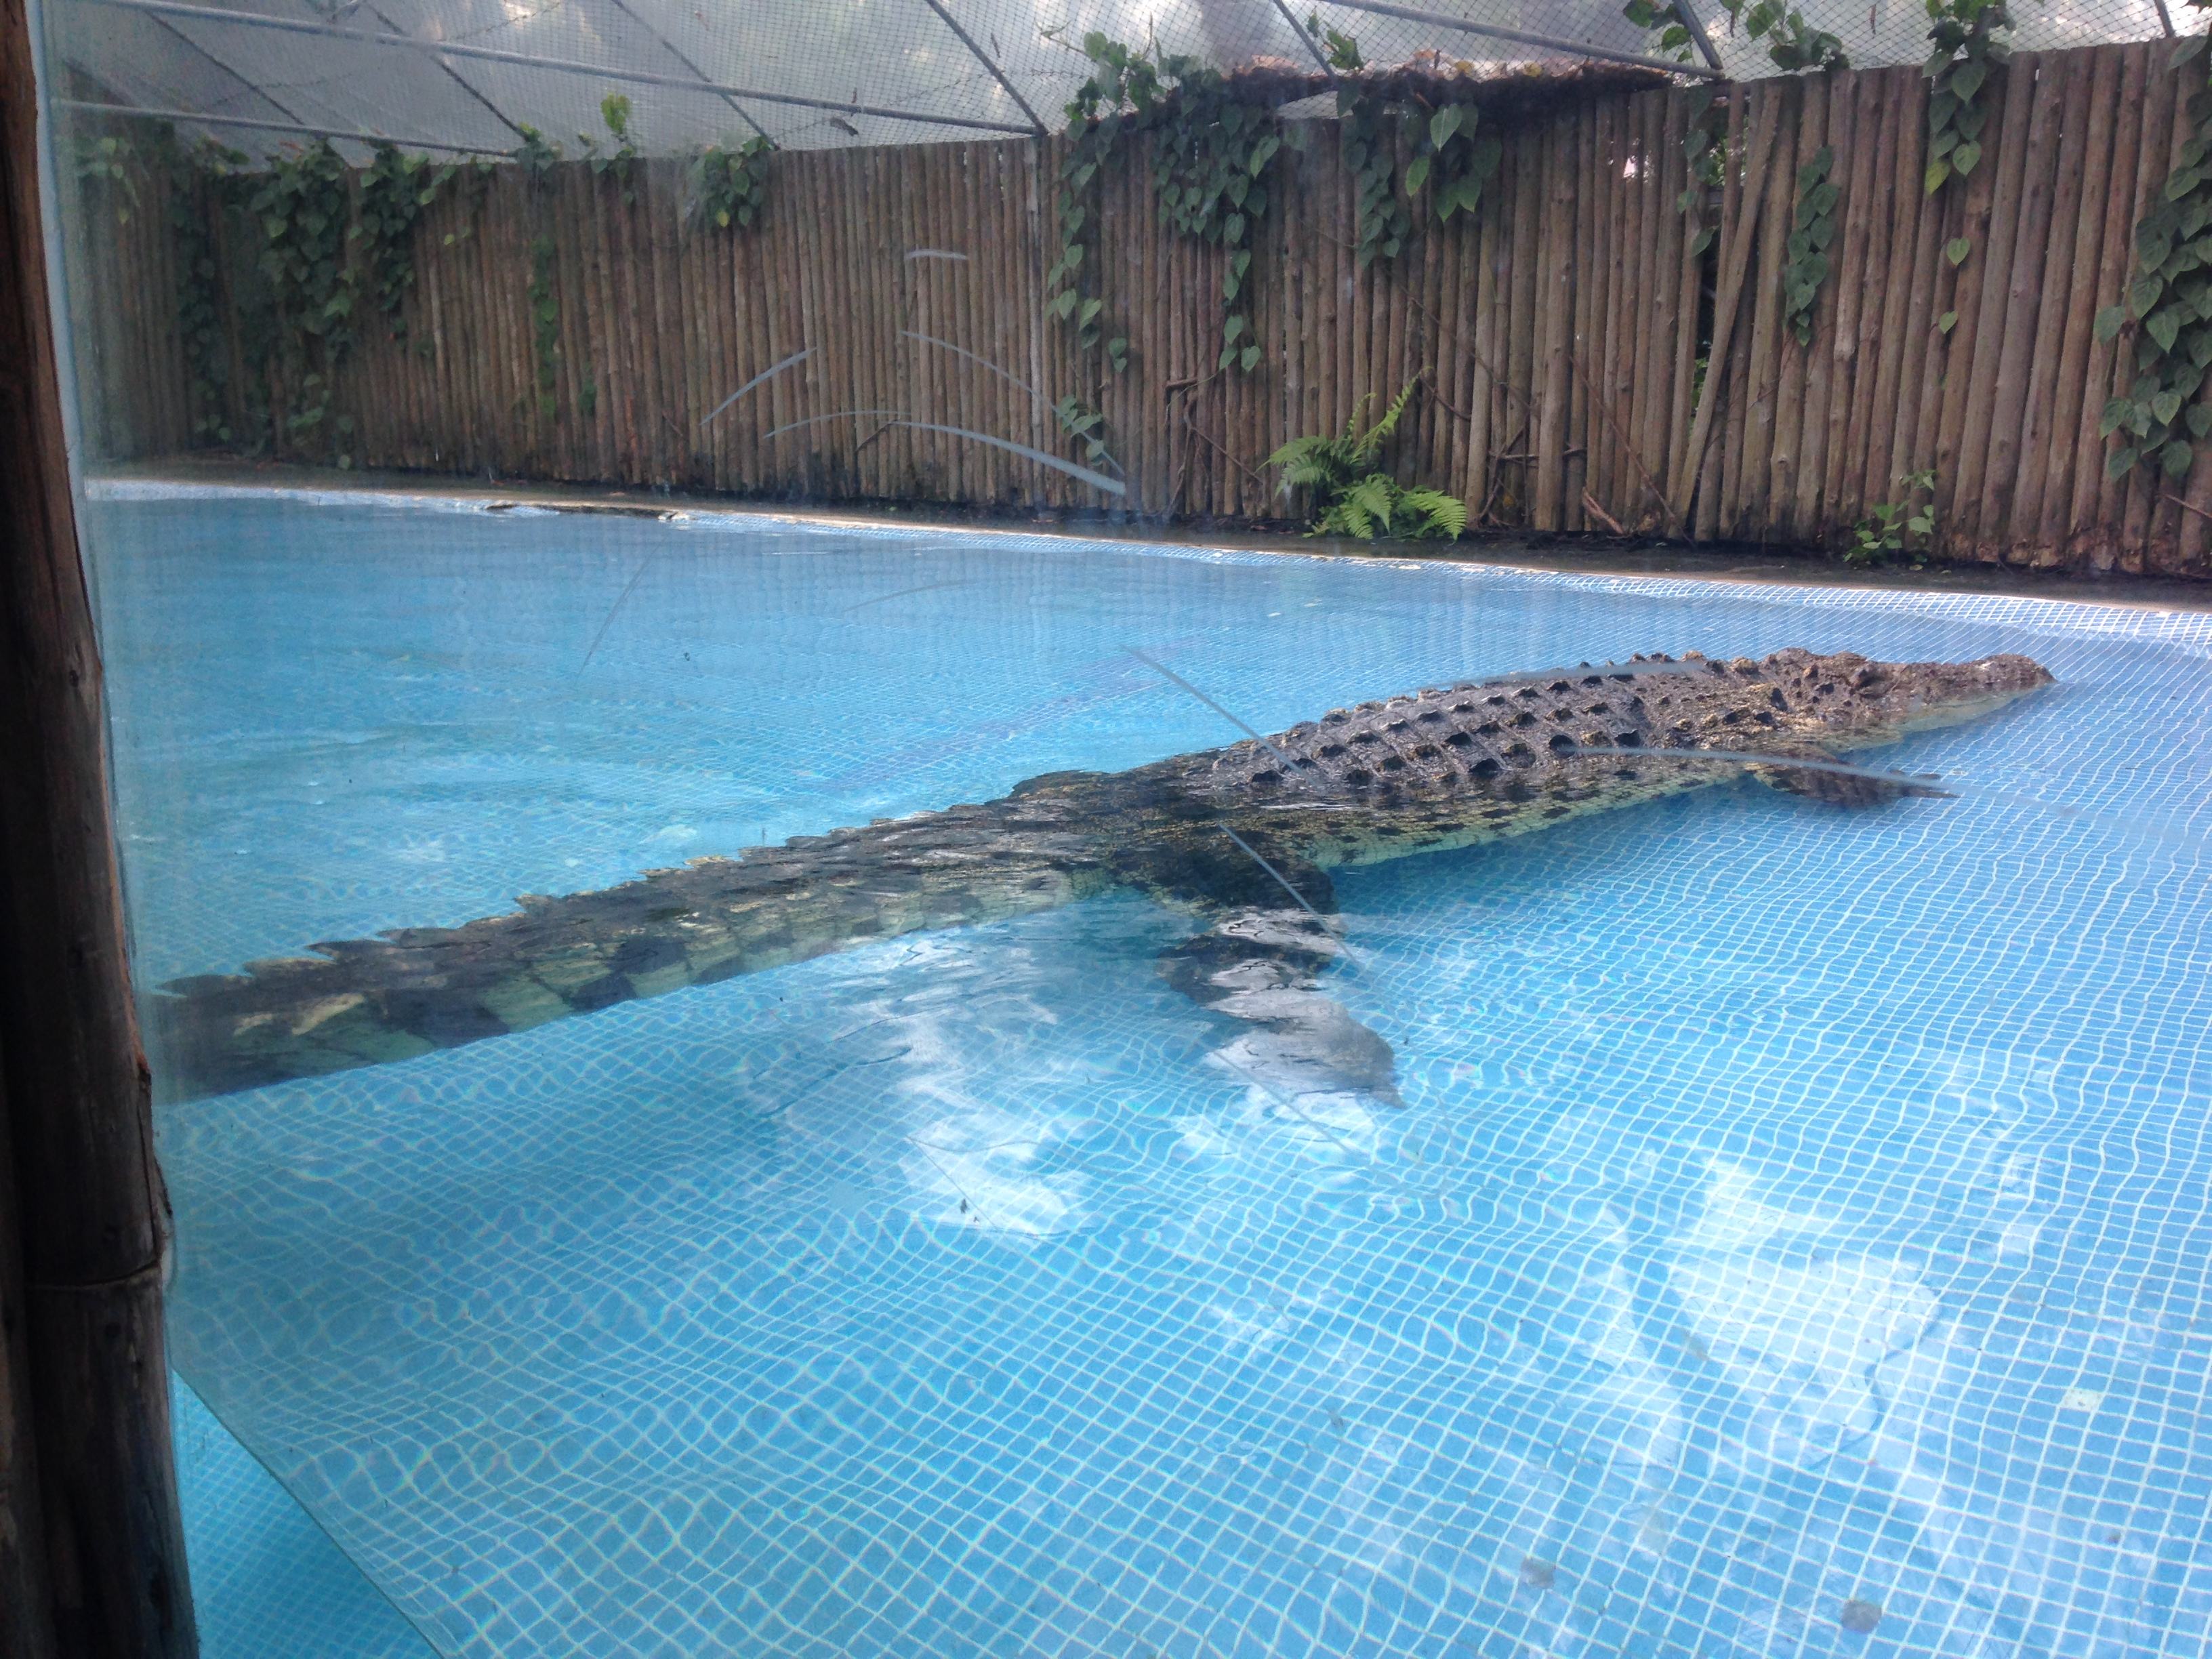 广州鳄鱼公园最大鳄鱼图片